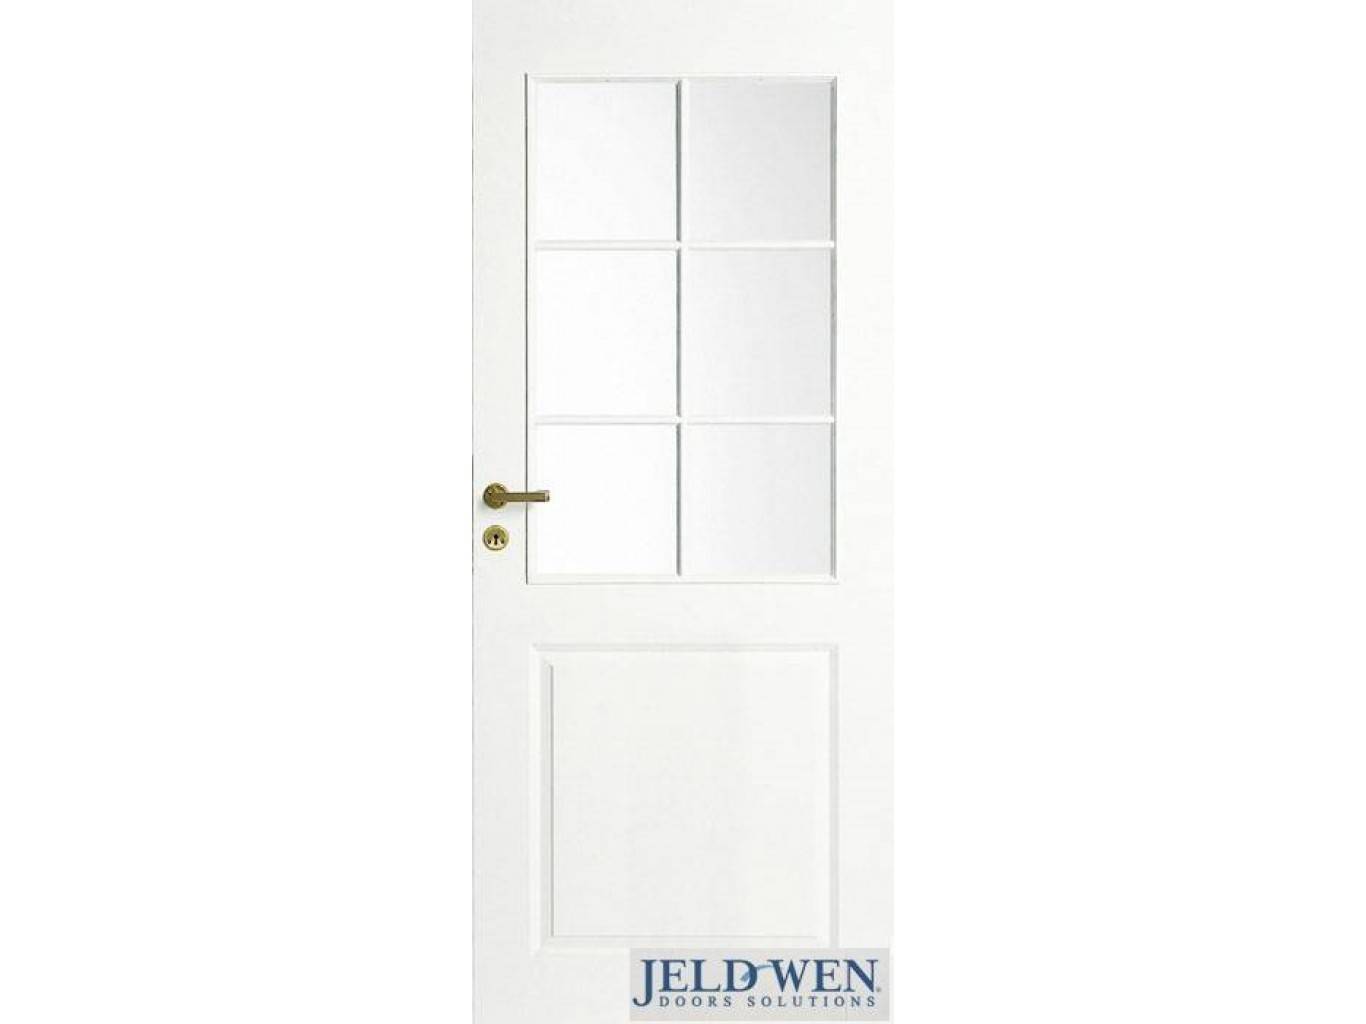 Двери фенестра – финские входные двери kaski и jeld-wen. входная дверь из финляндии - теплоизоляция сооружений